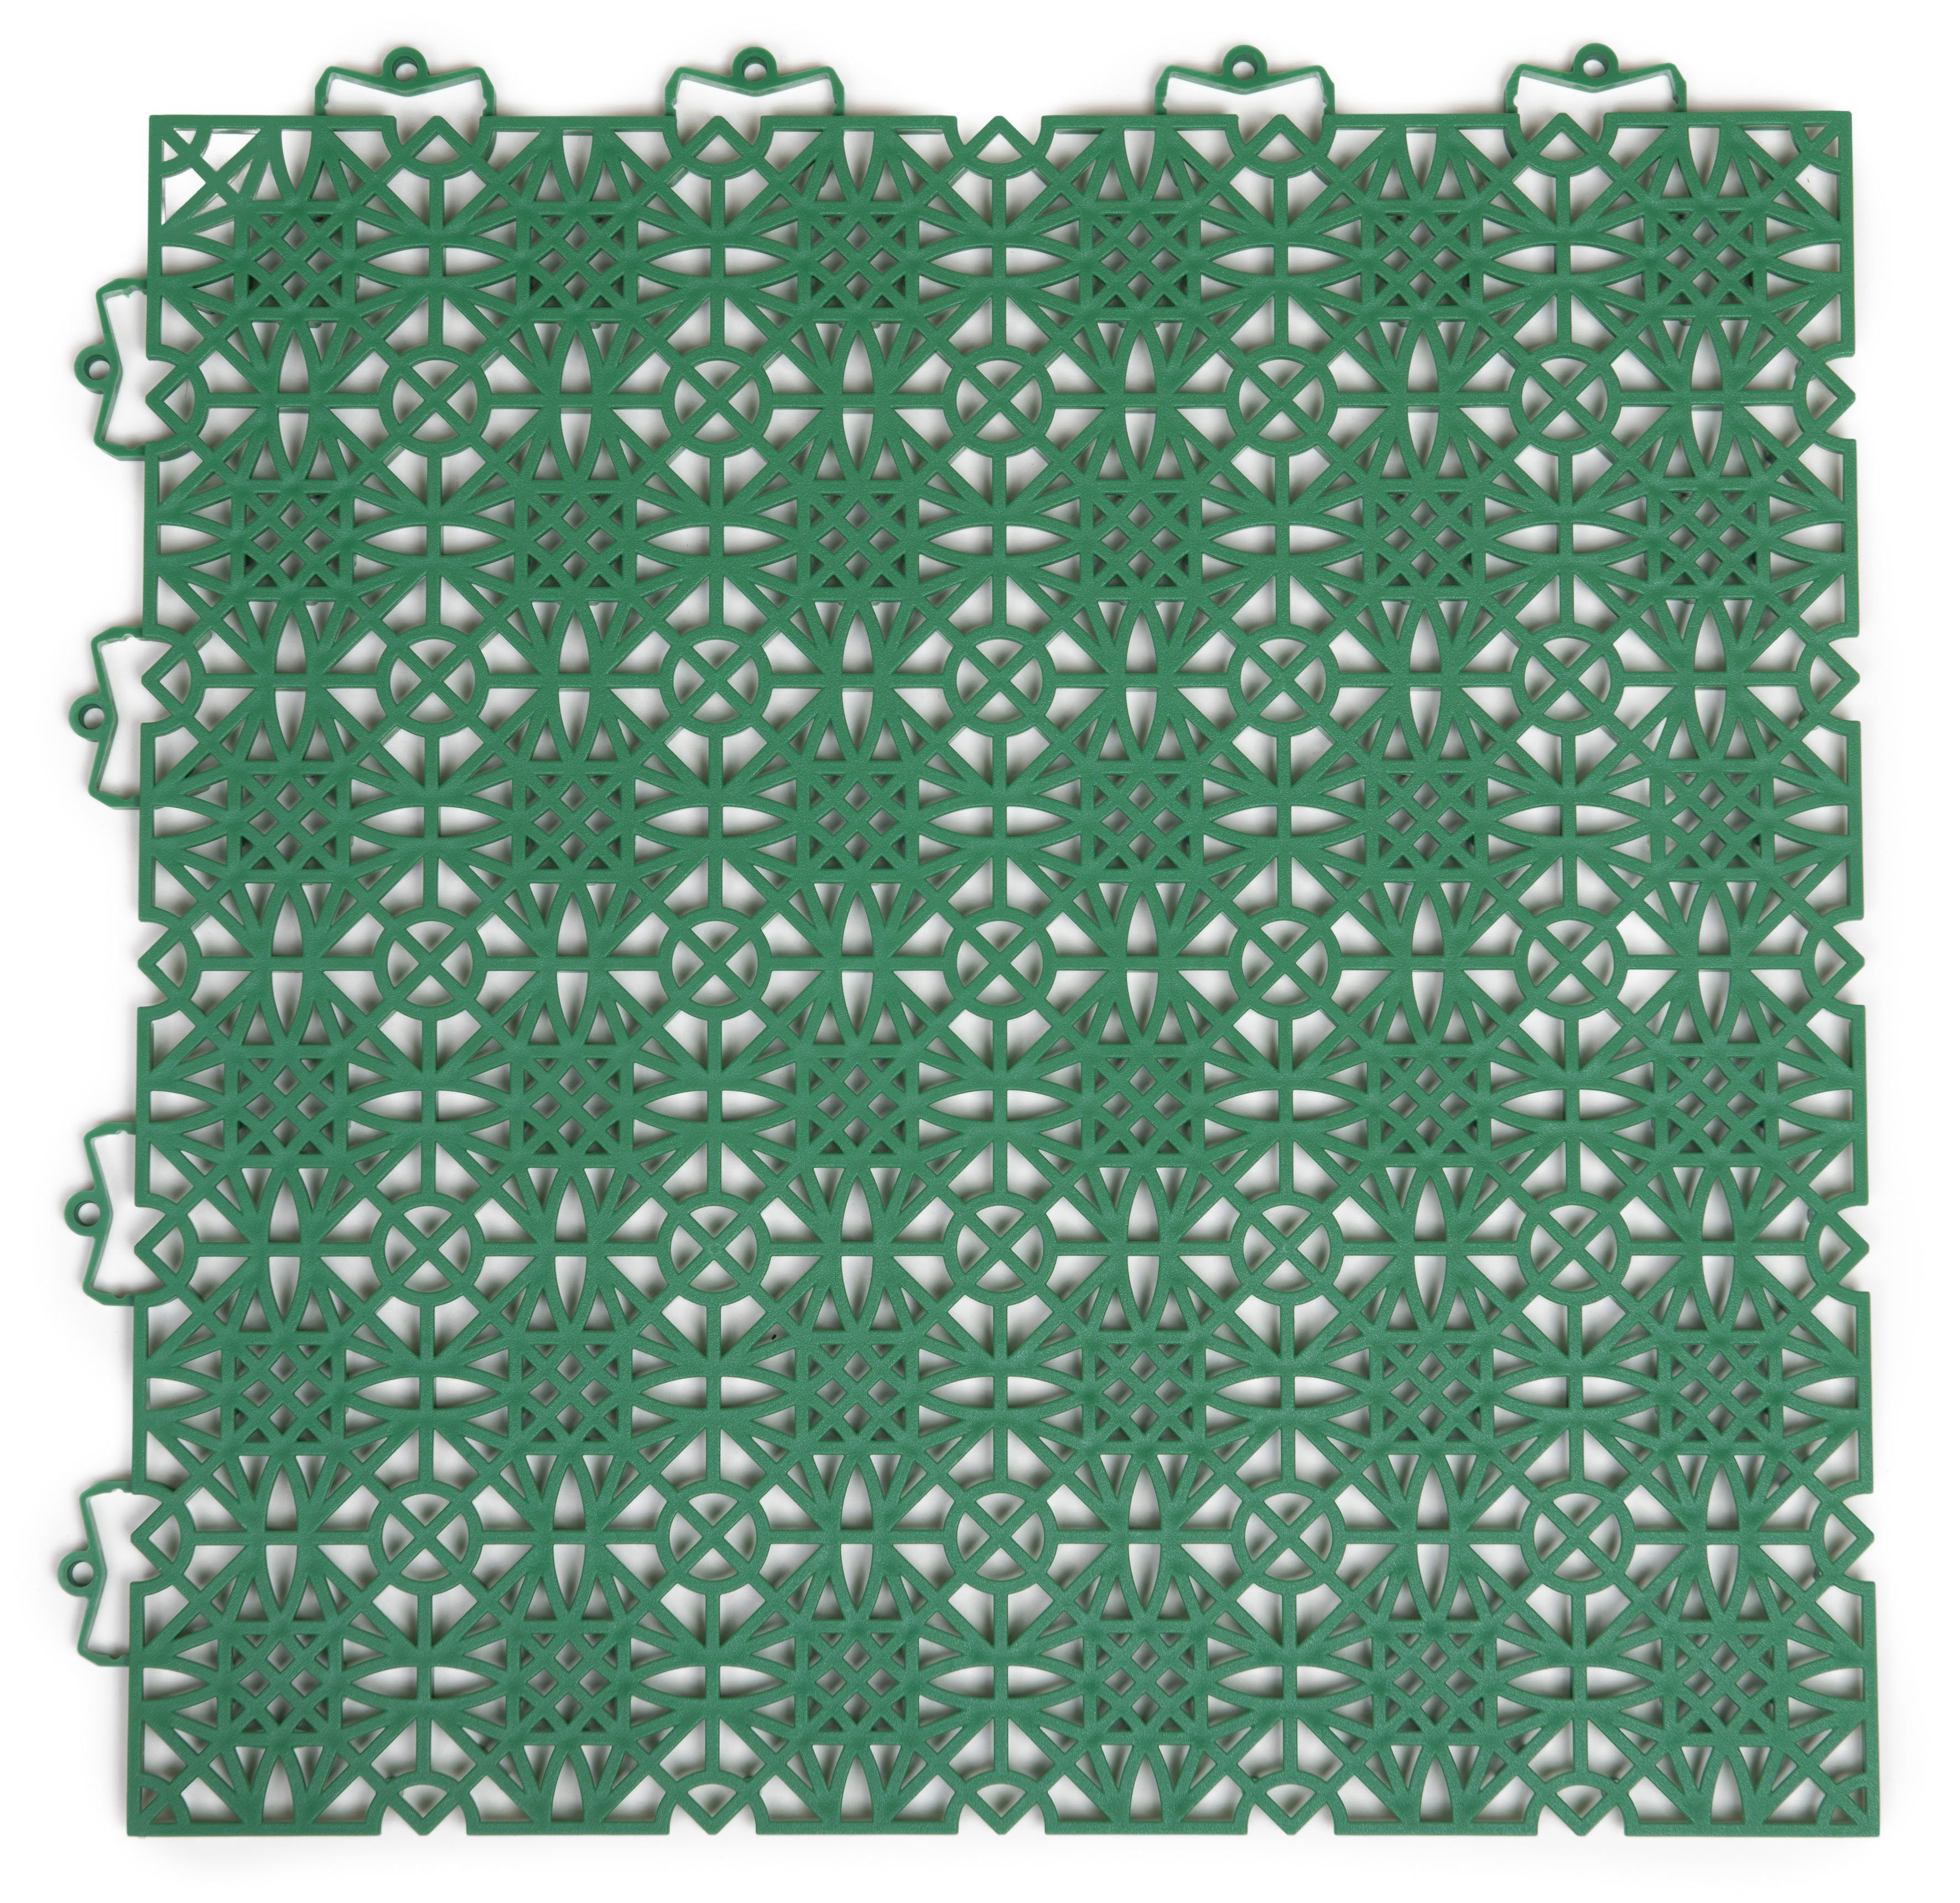 Andiamo Kunststoff-Fliesen 7 38x38 Outdoor qm, qm, qm, 2 St., Set Sol, UV-beständig Packung, mit Klickfliesen, 5 cm, Terra grün 1